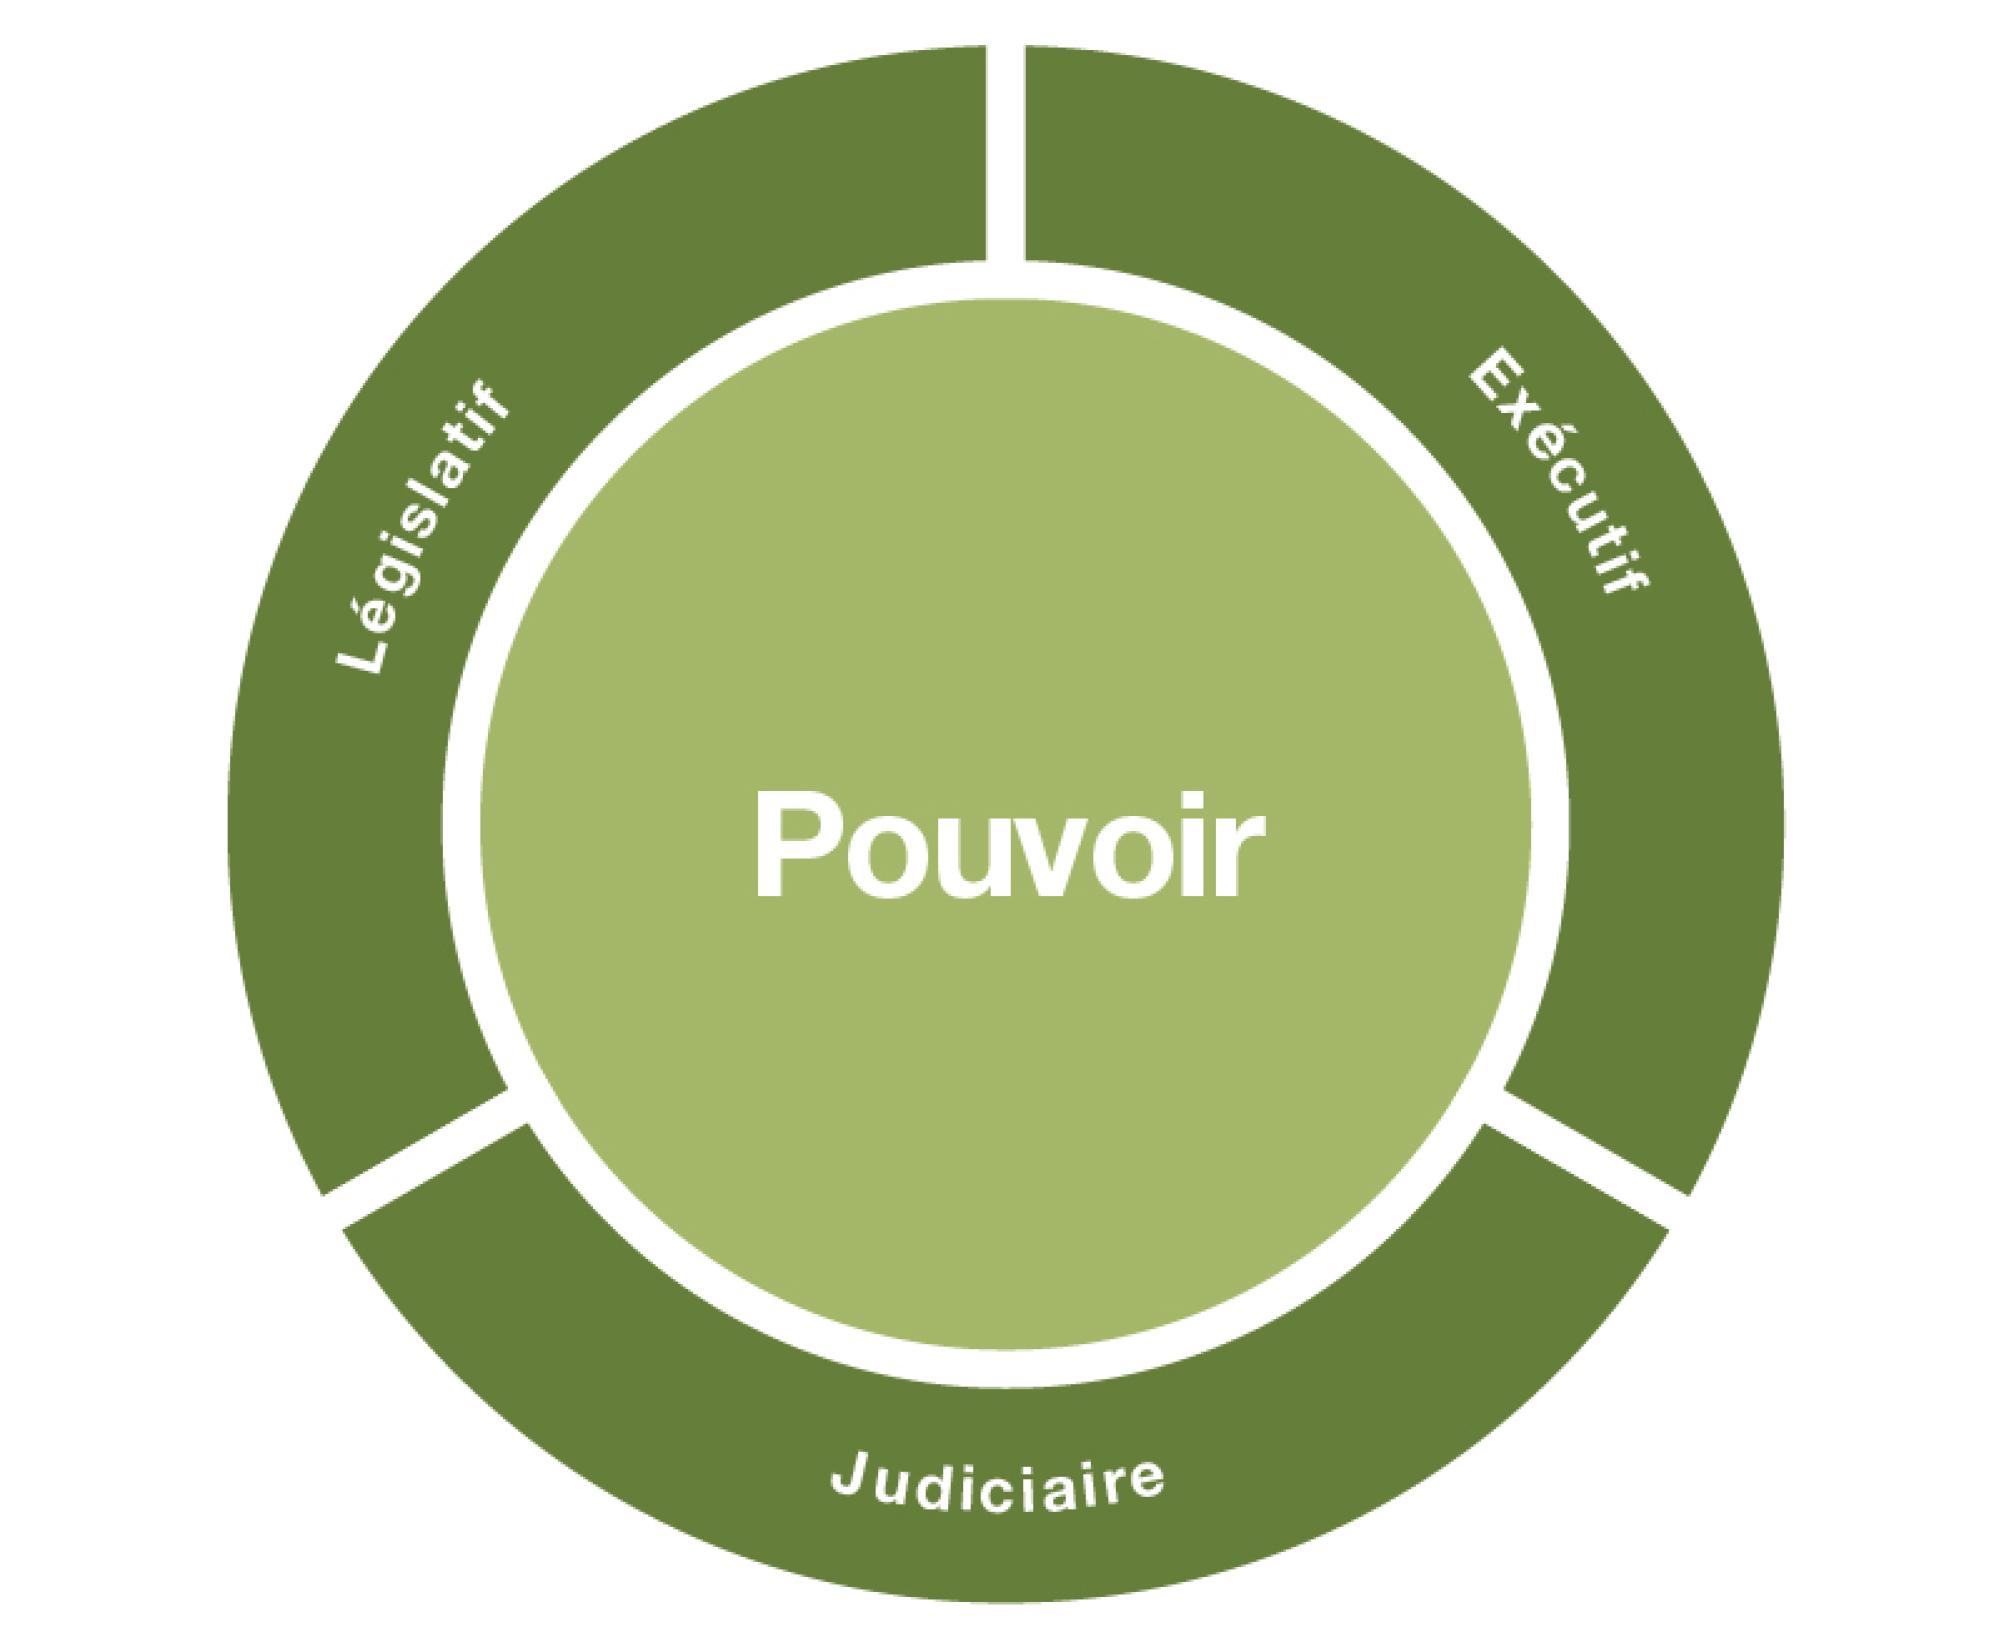 Le pouvoir de l’État est représenté par un rond central plein. Les trois catégories qui le composent sont réparties chacune sur un tiers du cercle extérieur. Il s'agit des pouvoirs législatif, exécutif et judiciaire.